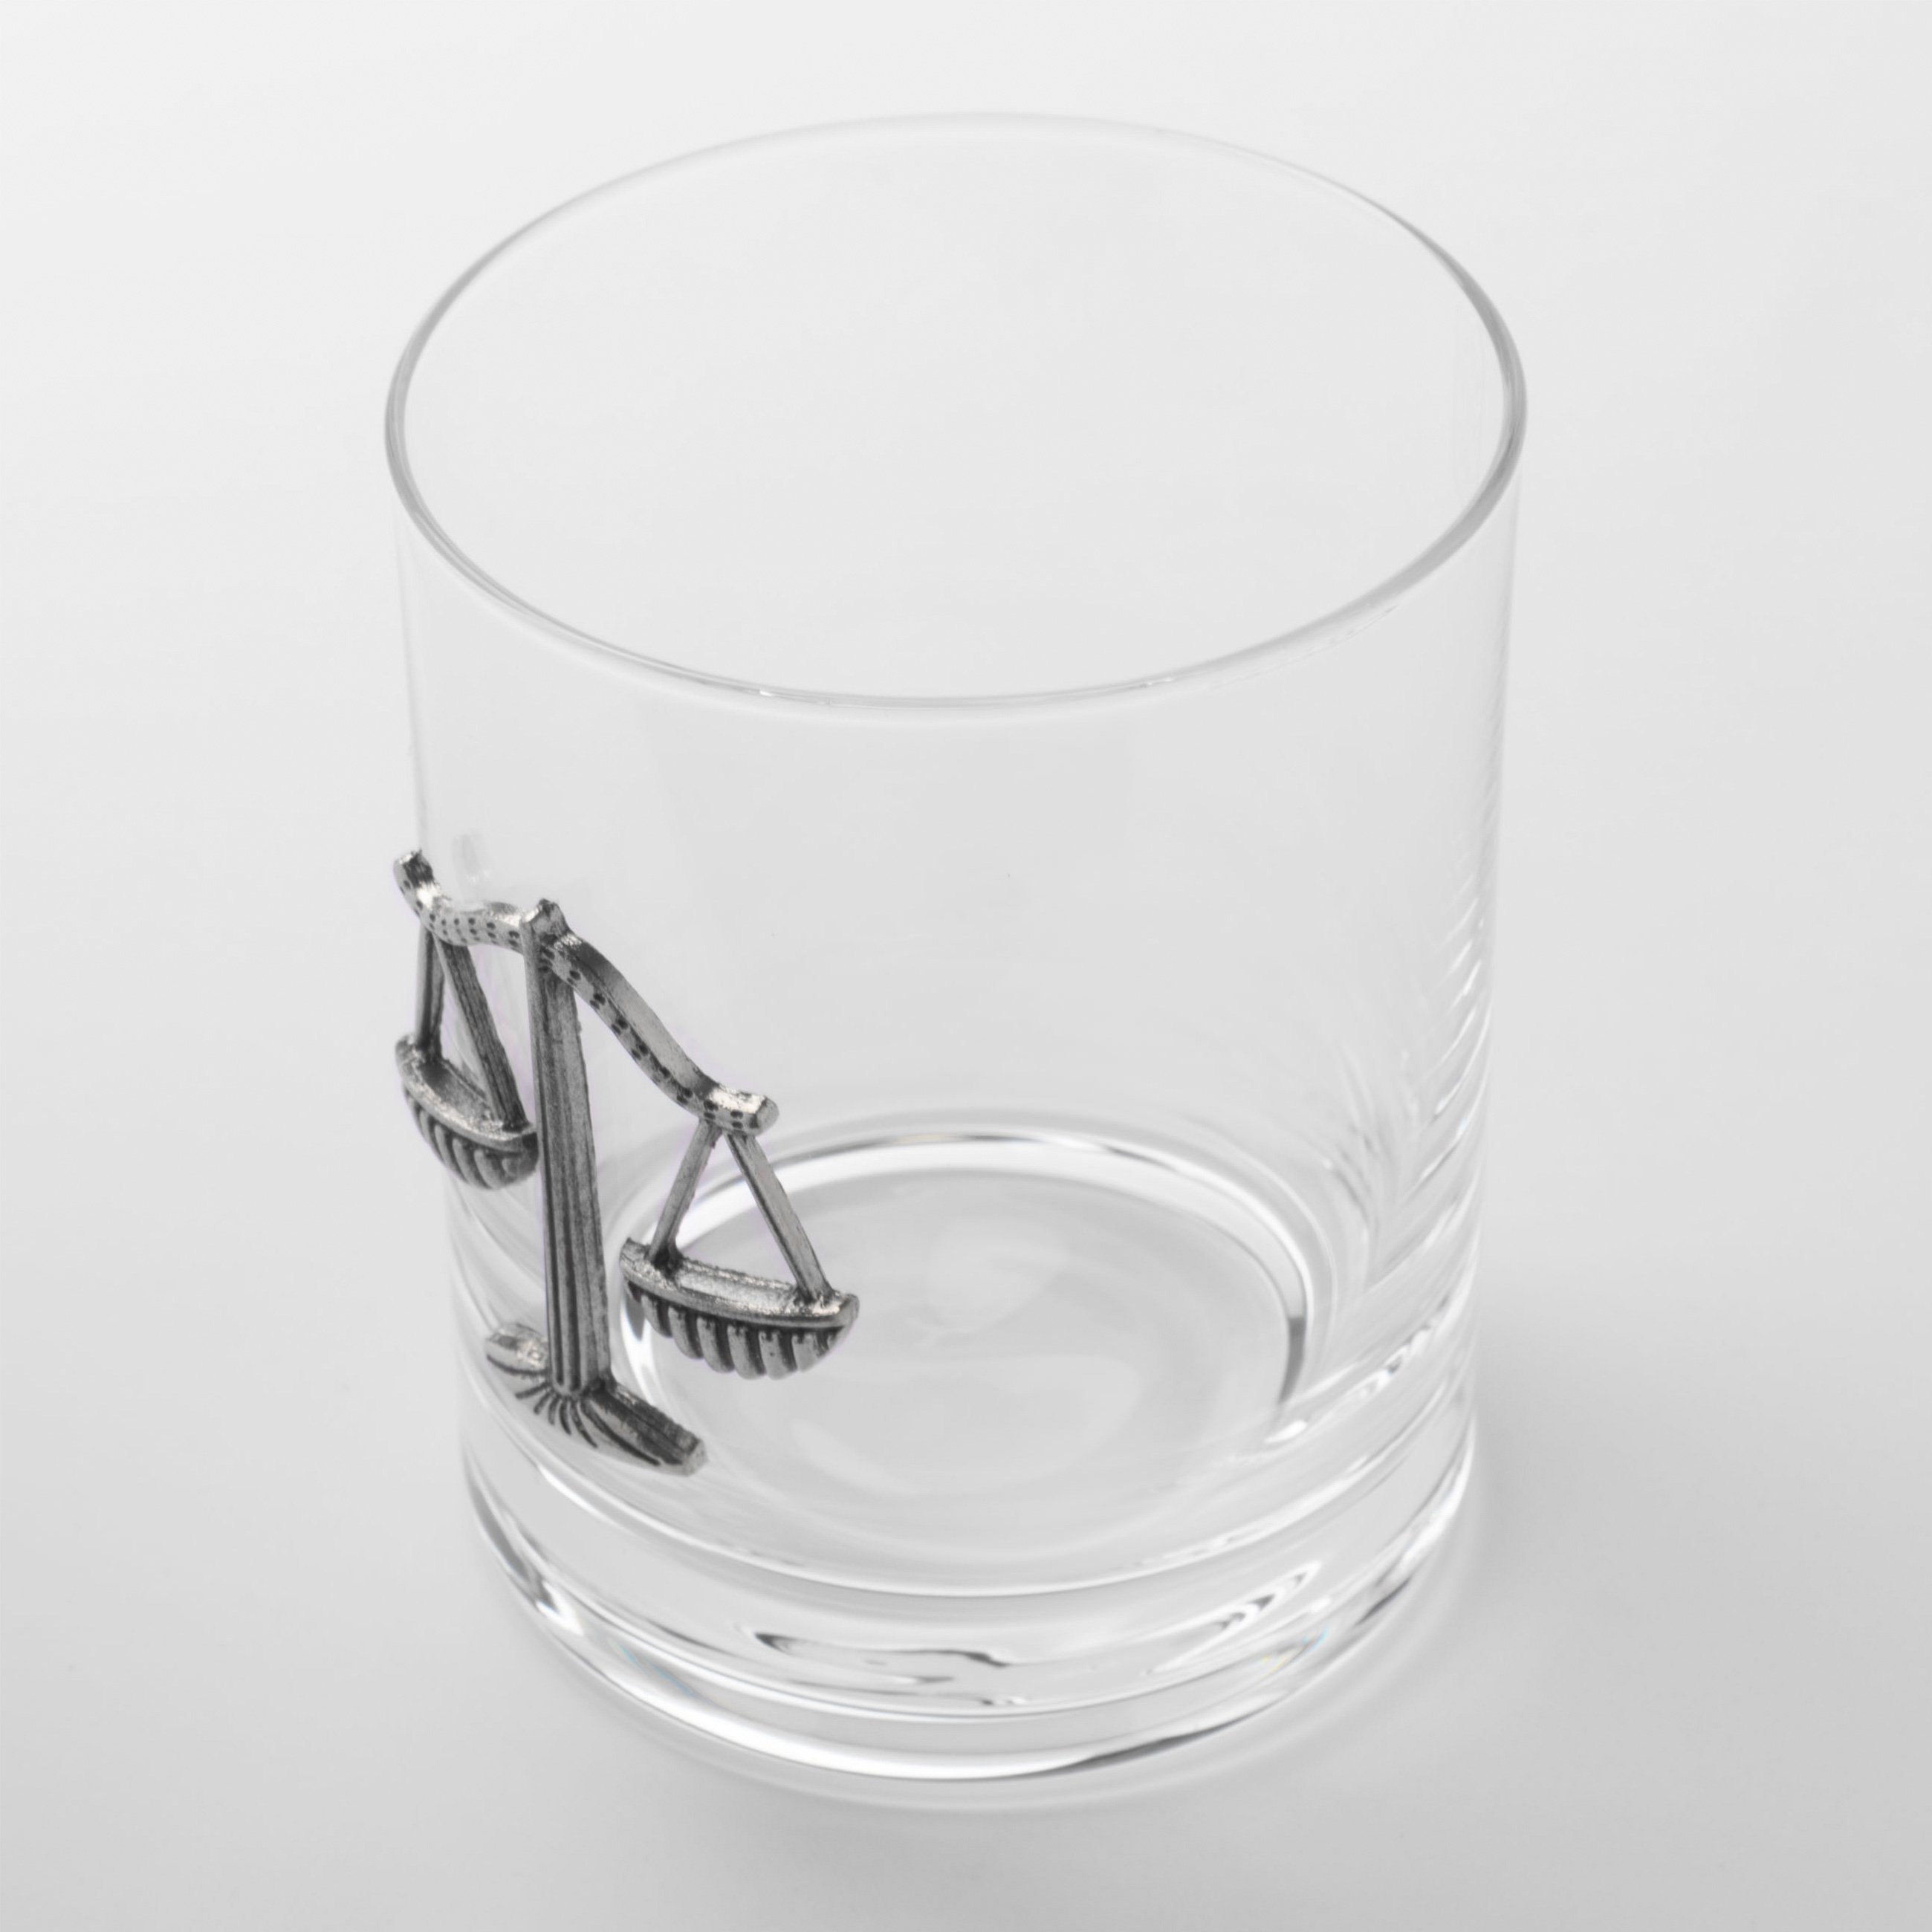 Стакан для виски, 340 мл, стекло/металл, серебристый, Весы, Zodiac изображение № 2